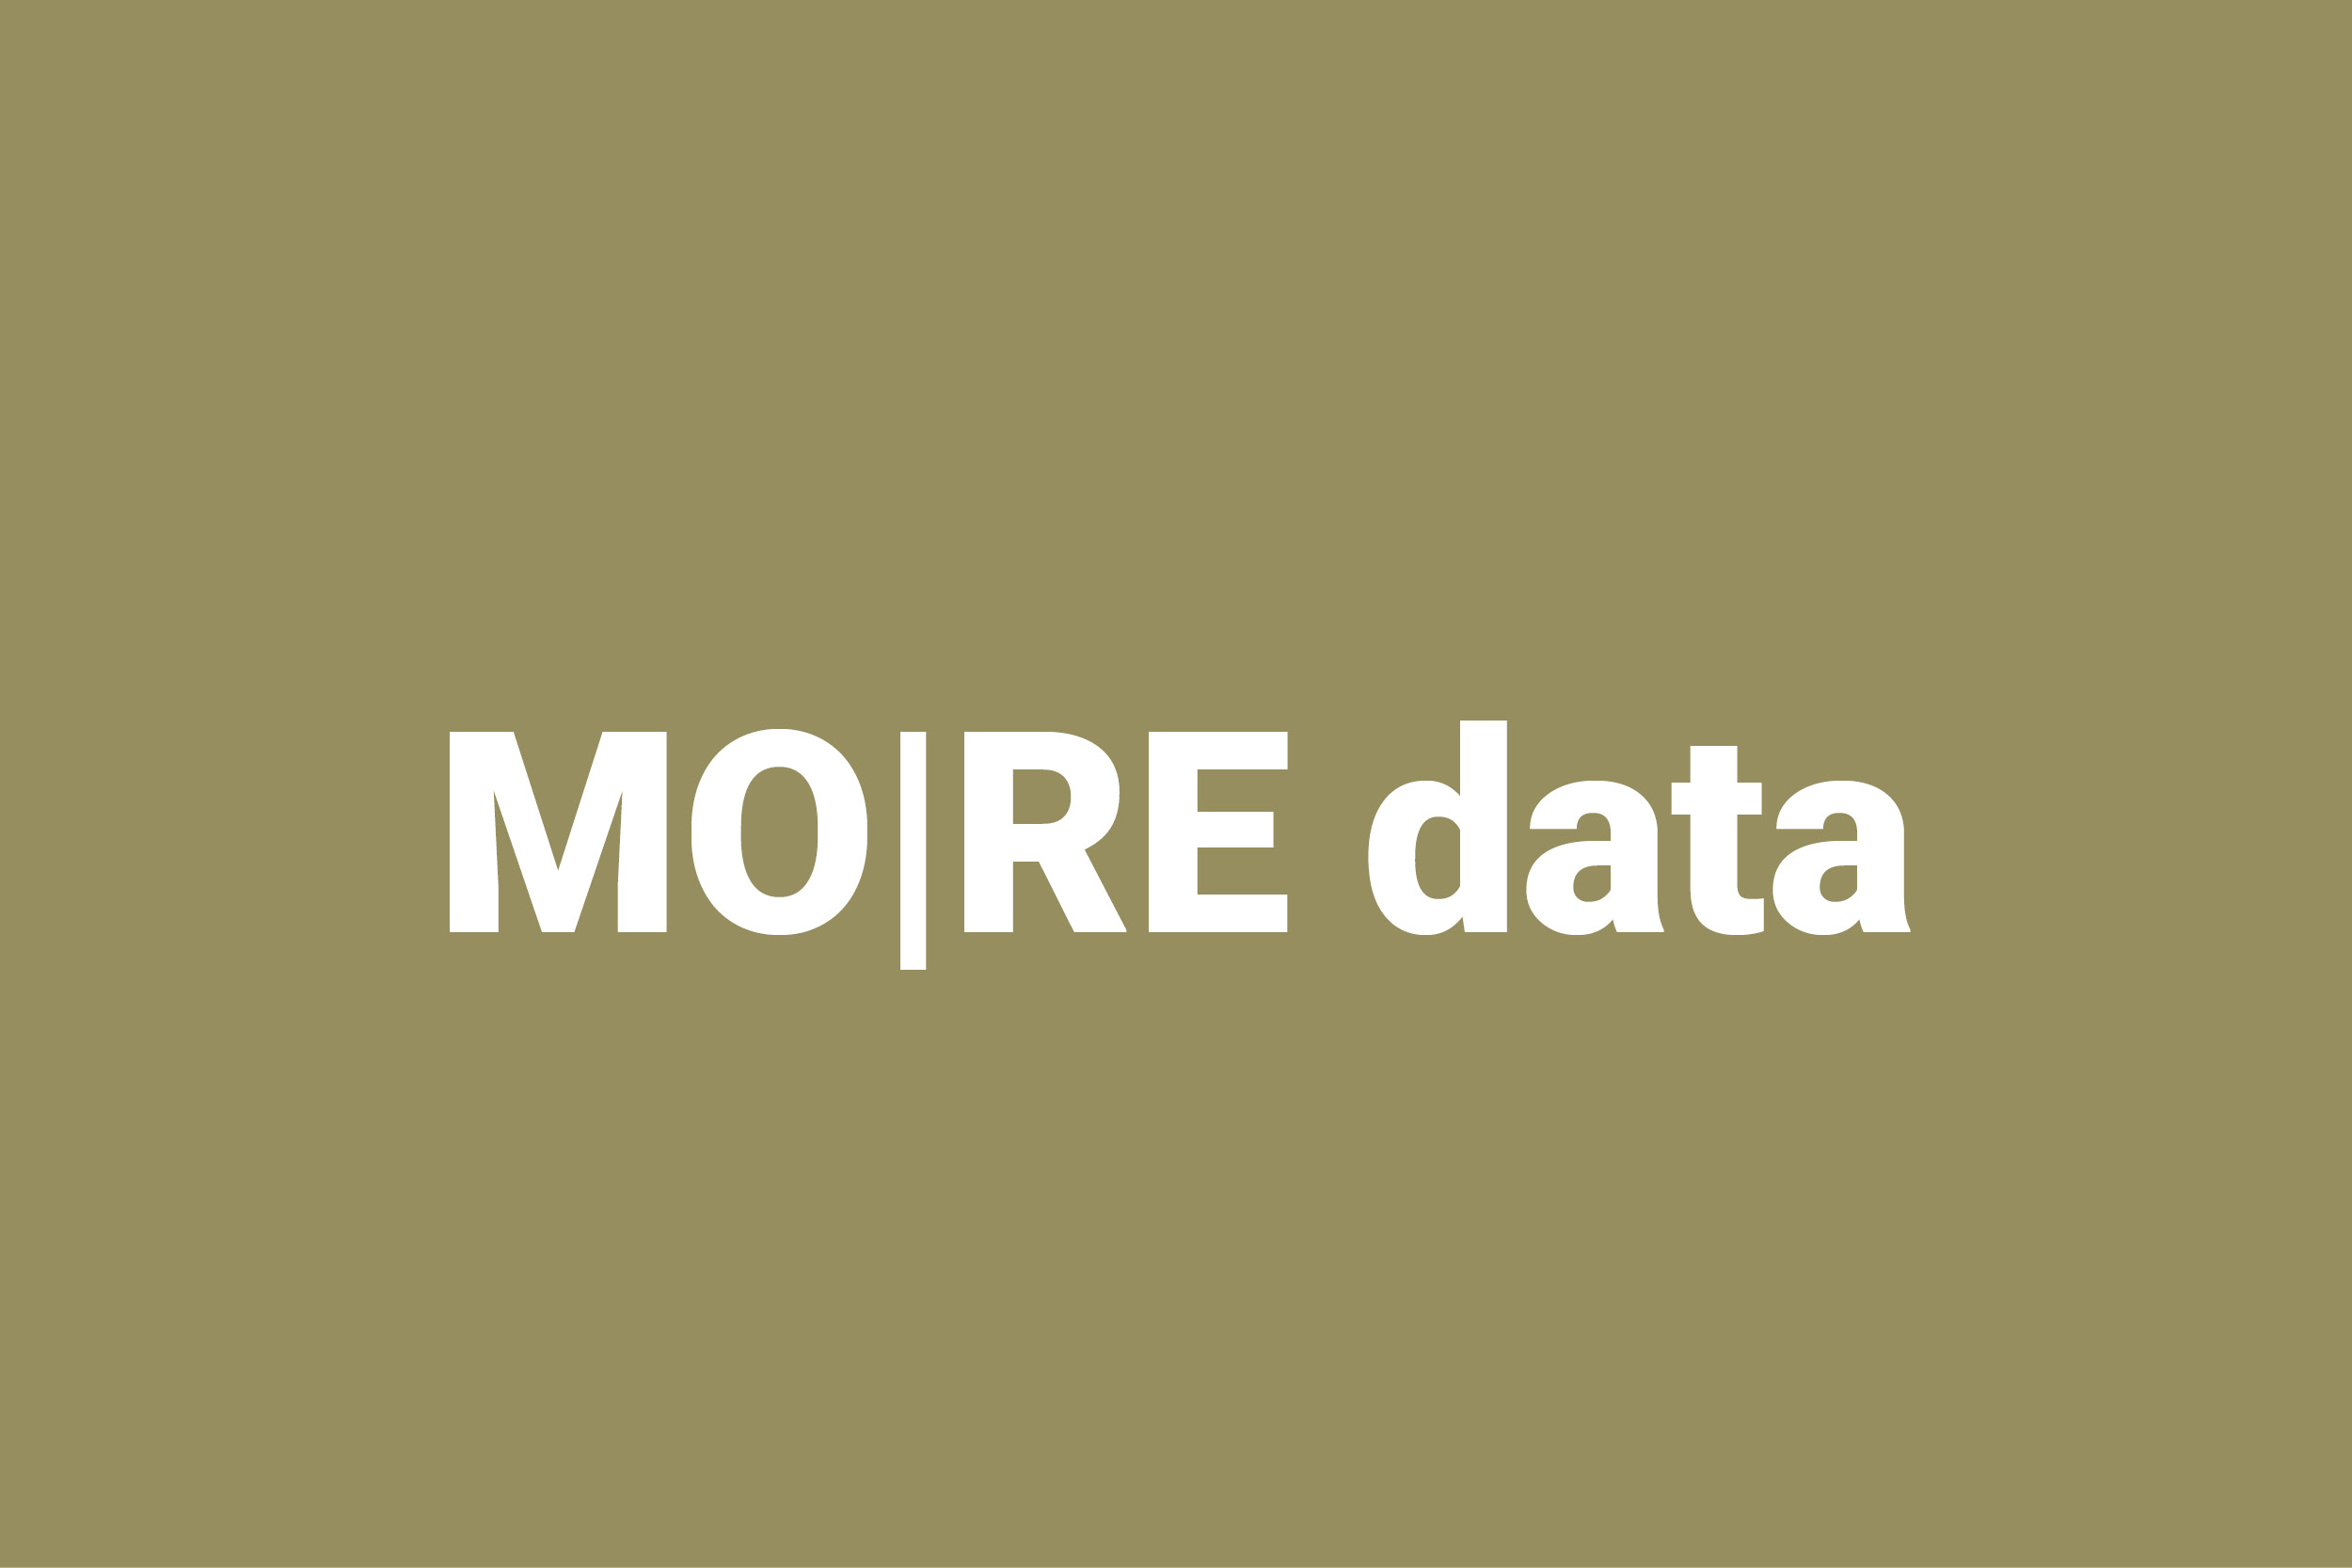 Titel Projekt MO|RE data